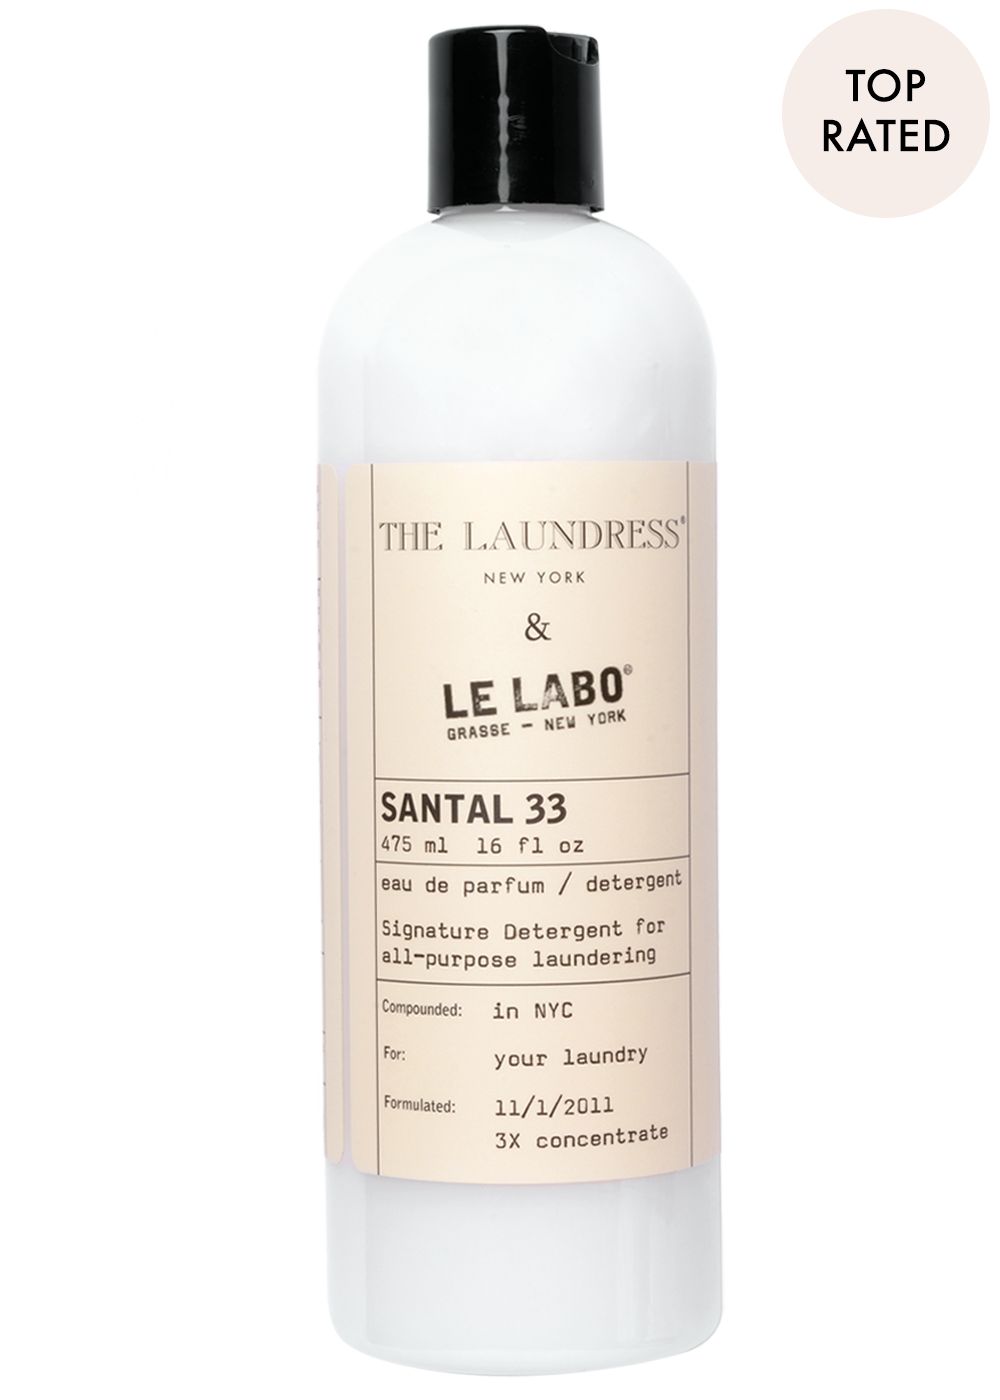 Le Labo Santal Detergent | The Laundress